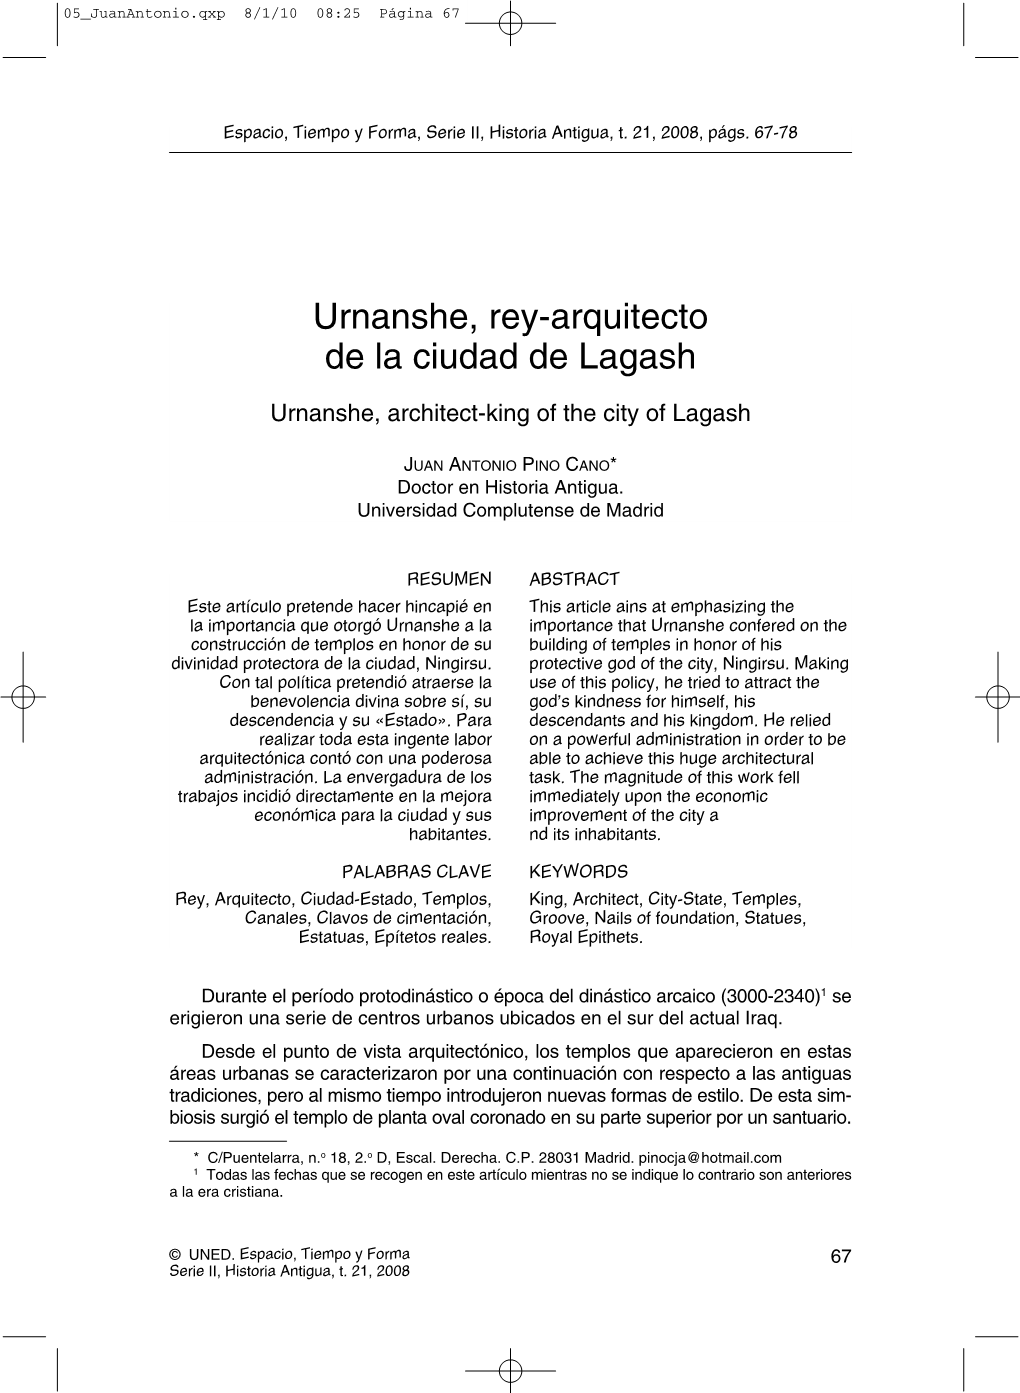 Urnanshe, Rey-Arquitecto De La Ciudad De Lagash